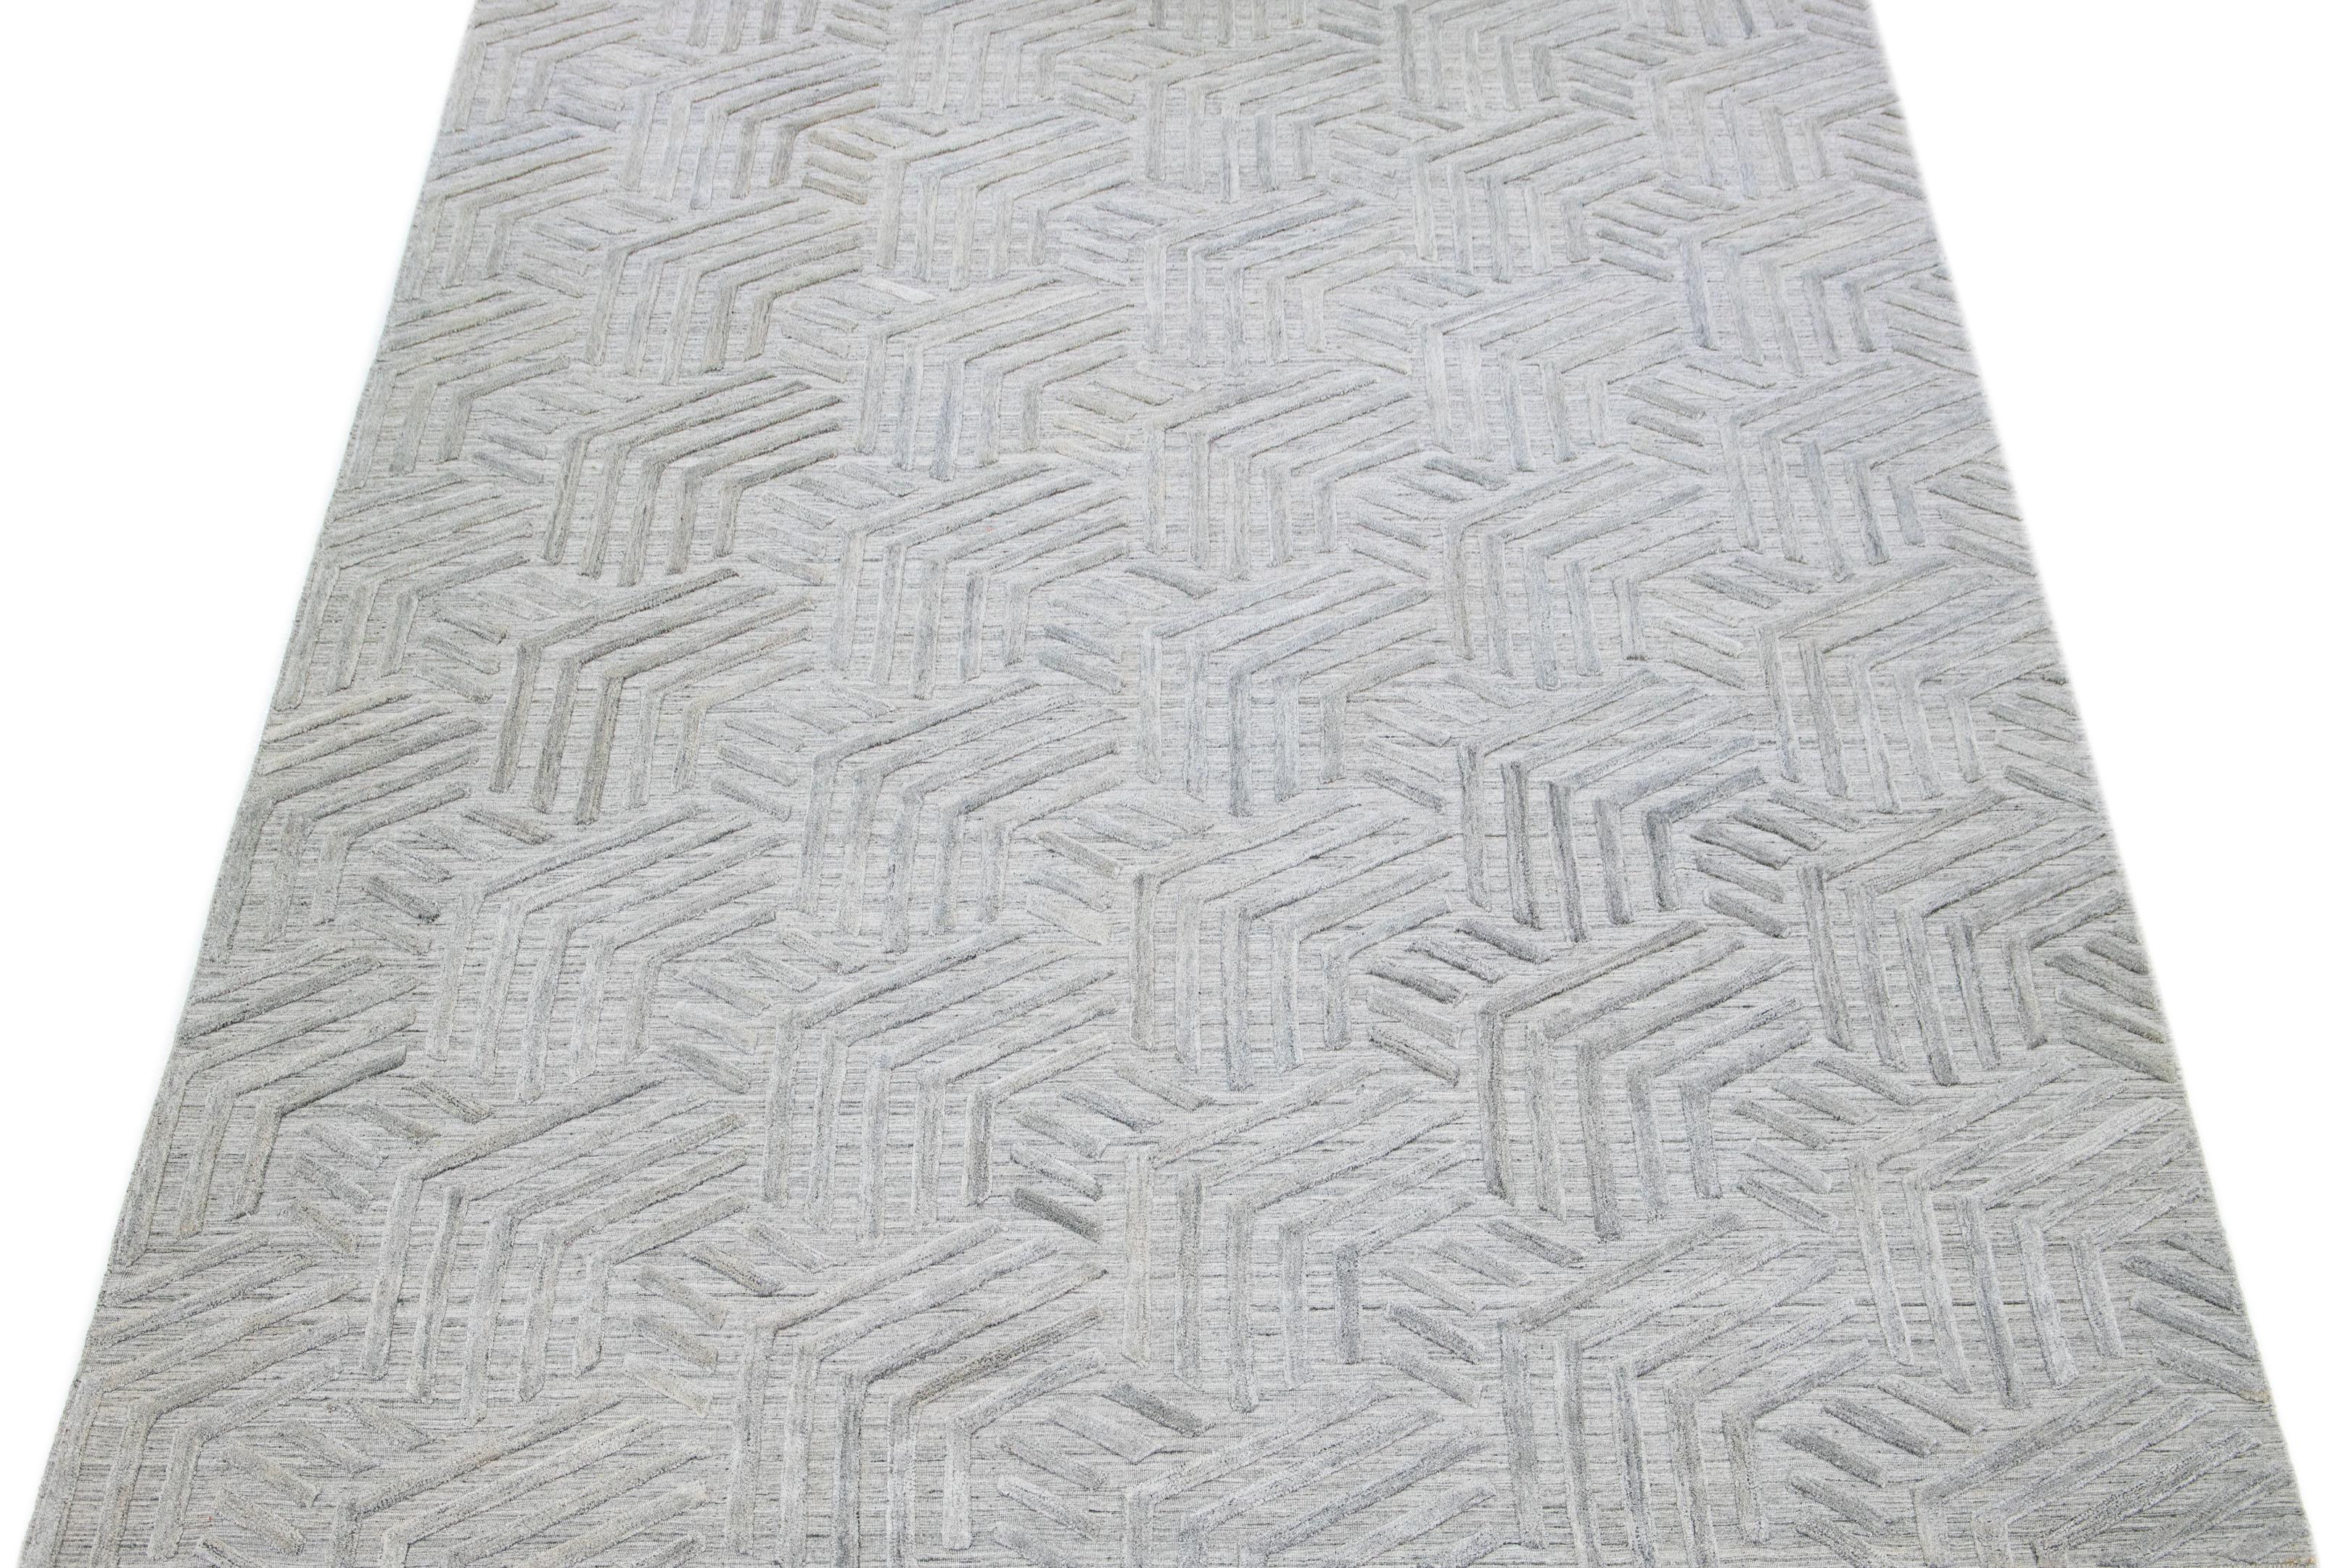 Découvrez la beauté d'un tapis moderne indien transitionnel en laine tissée à plat et nouée à la main, avec un champ gris sophistiqué. Le motif géométrique ivoire, texturé et gracieux, qui parcourt l'ensemble du tapis, ajoute à son charme